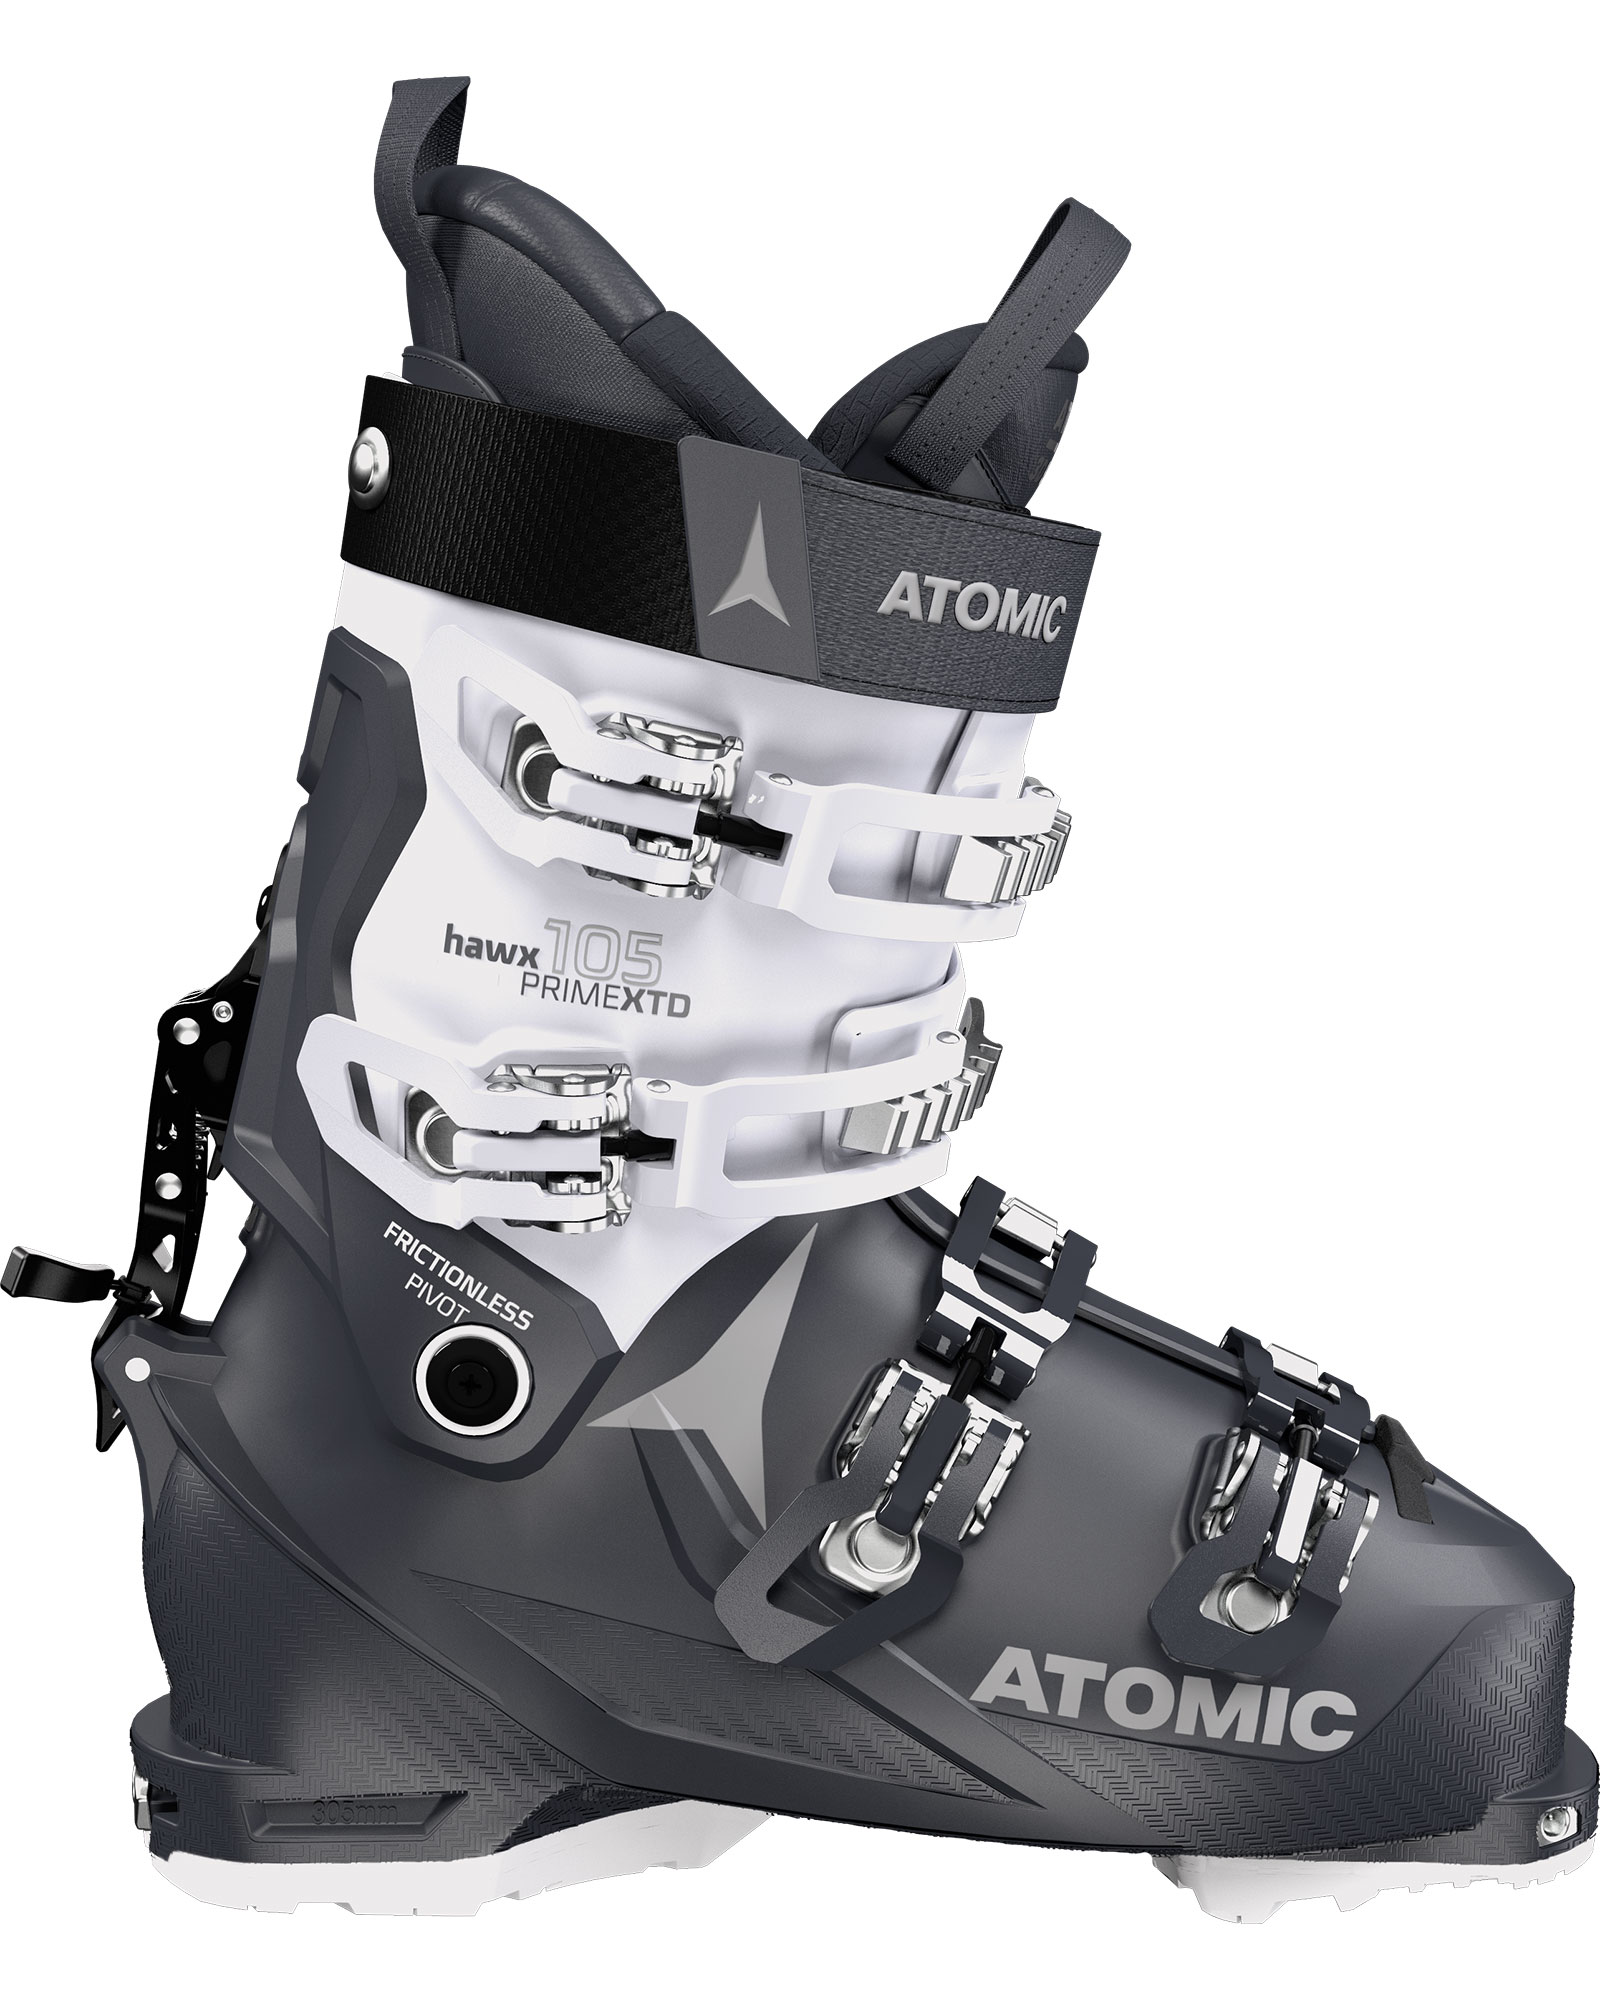 Atomic Hawx Prime XTD 105 Tech XTD GW Women’s Ski Boots 2023 - Grey/Blue/Vapor/Grey MP 25.0